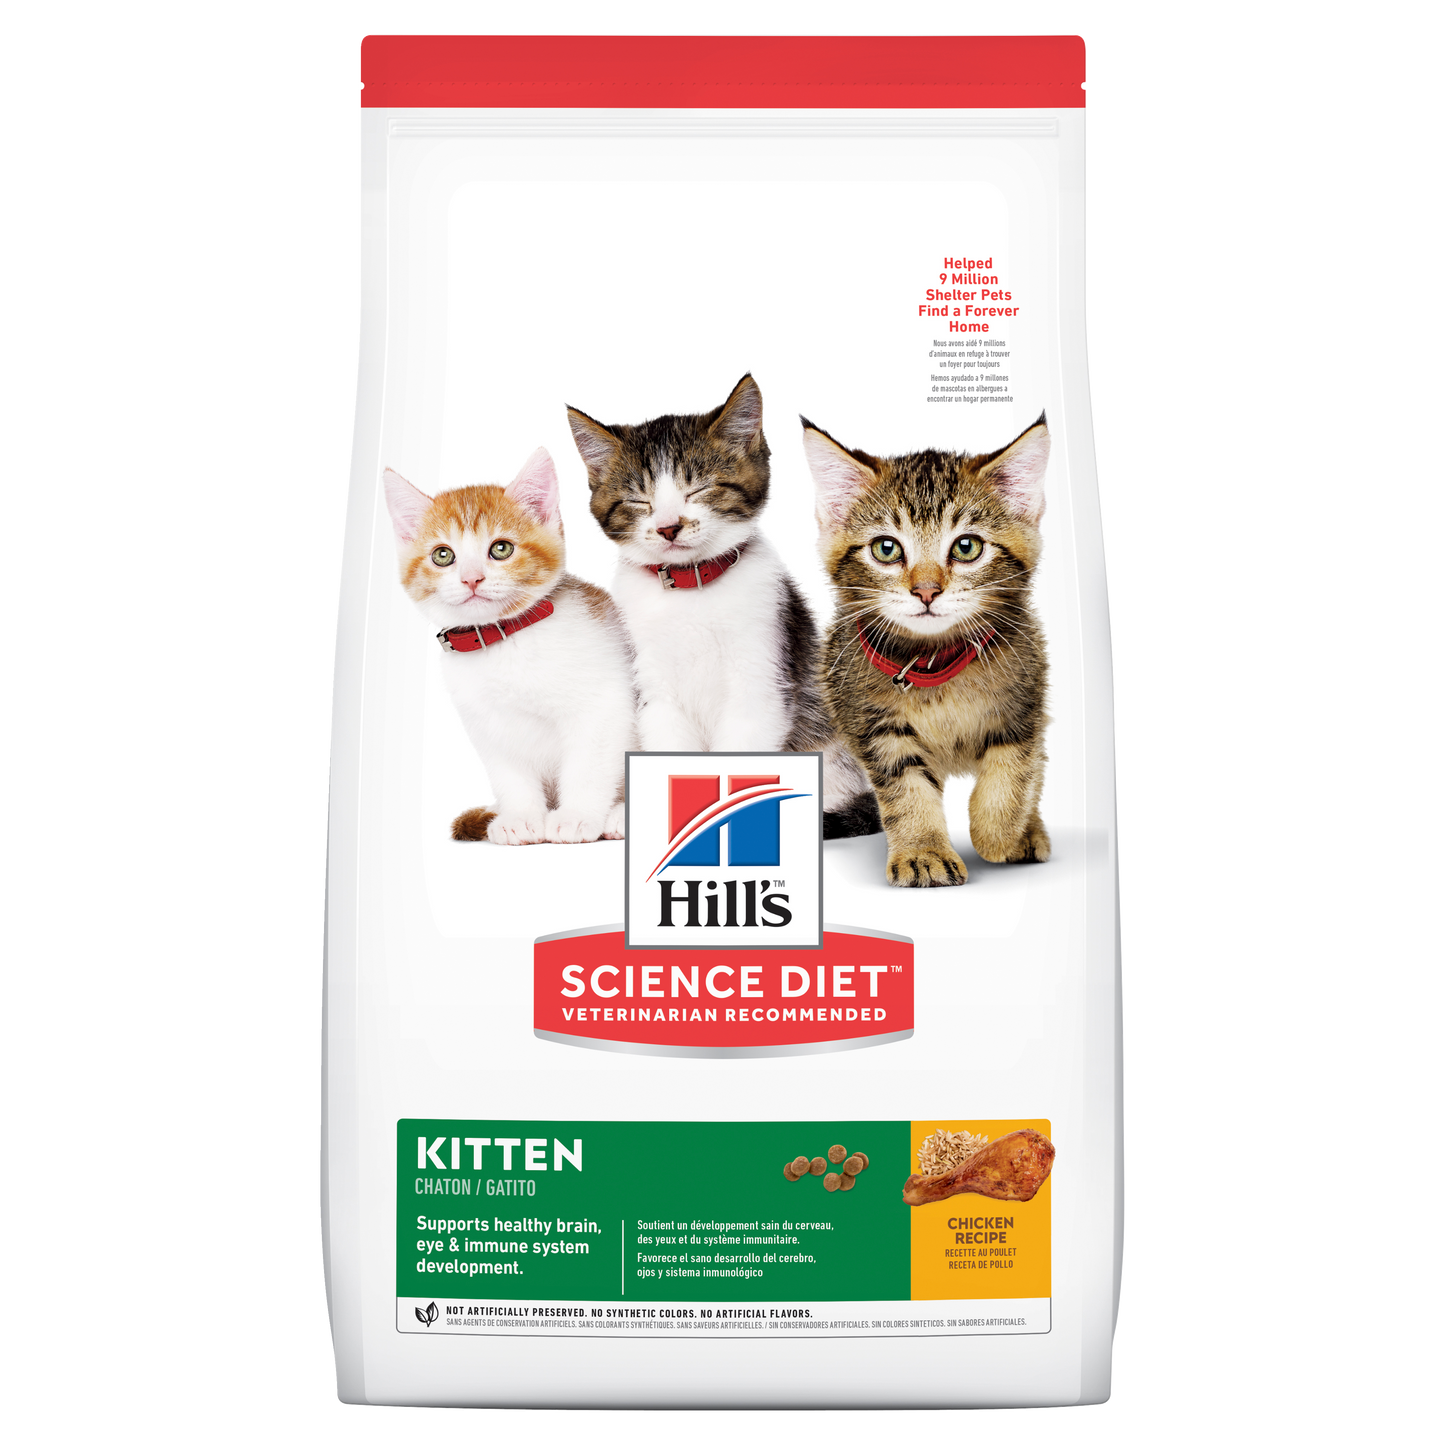 Hills Science Diet Kitten 1.58kg